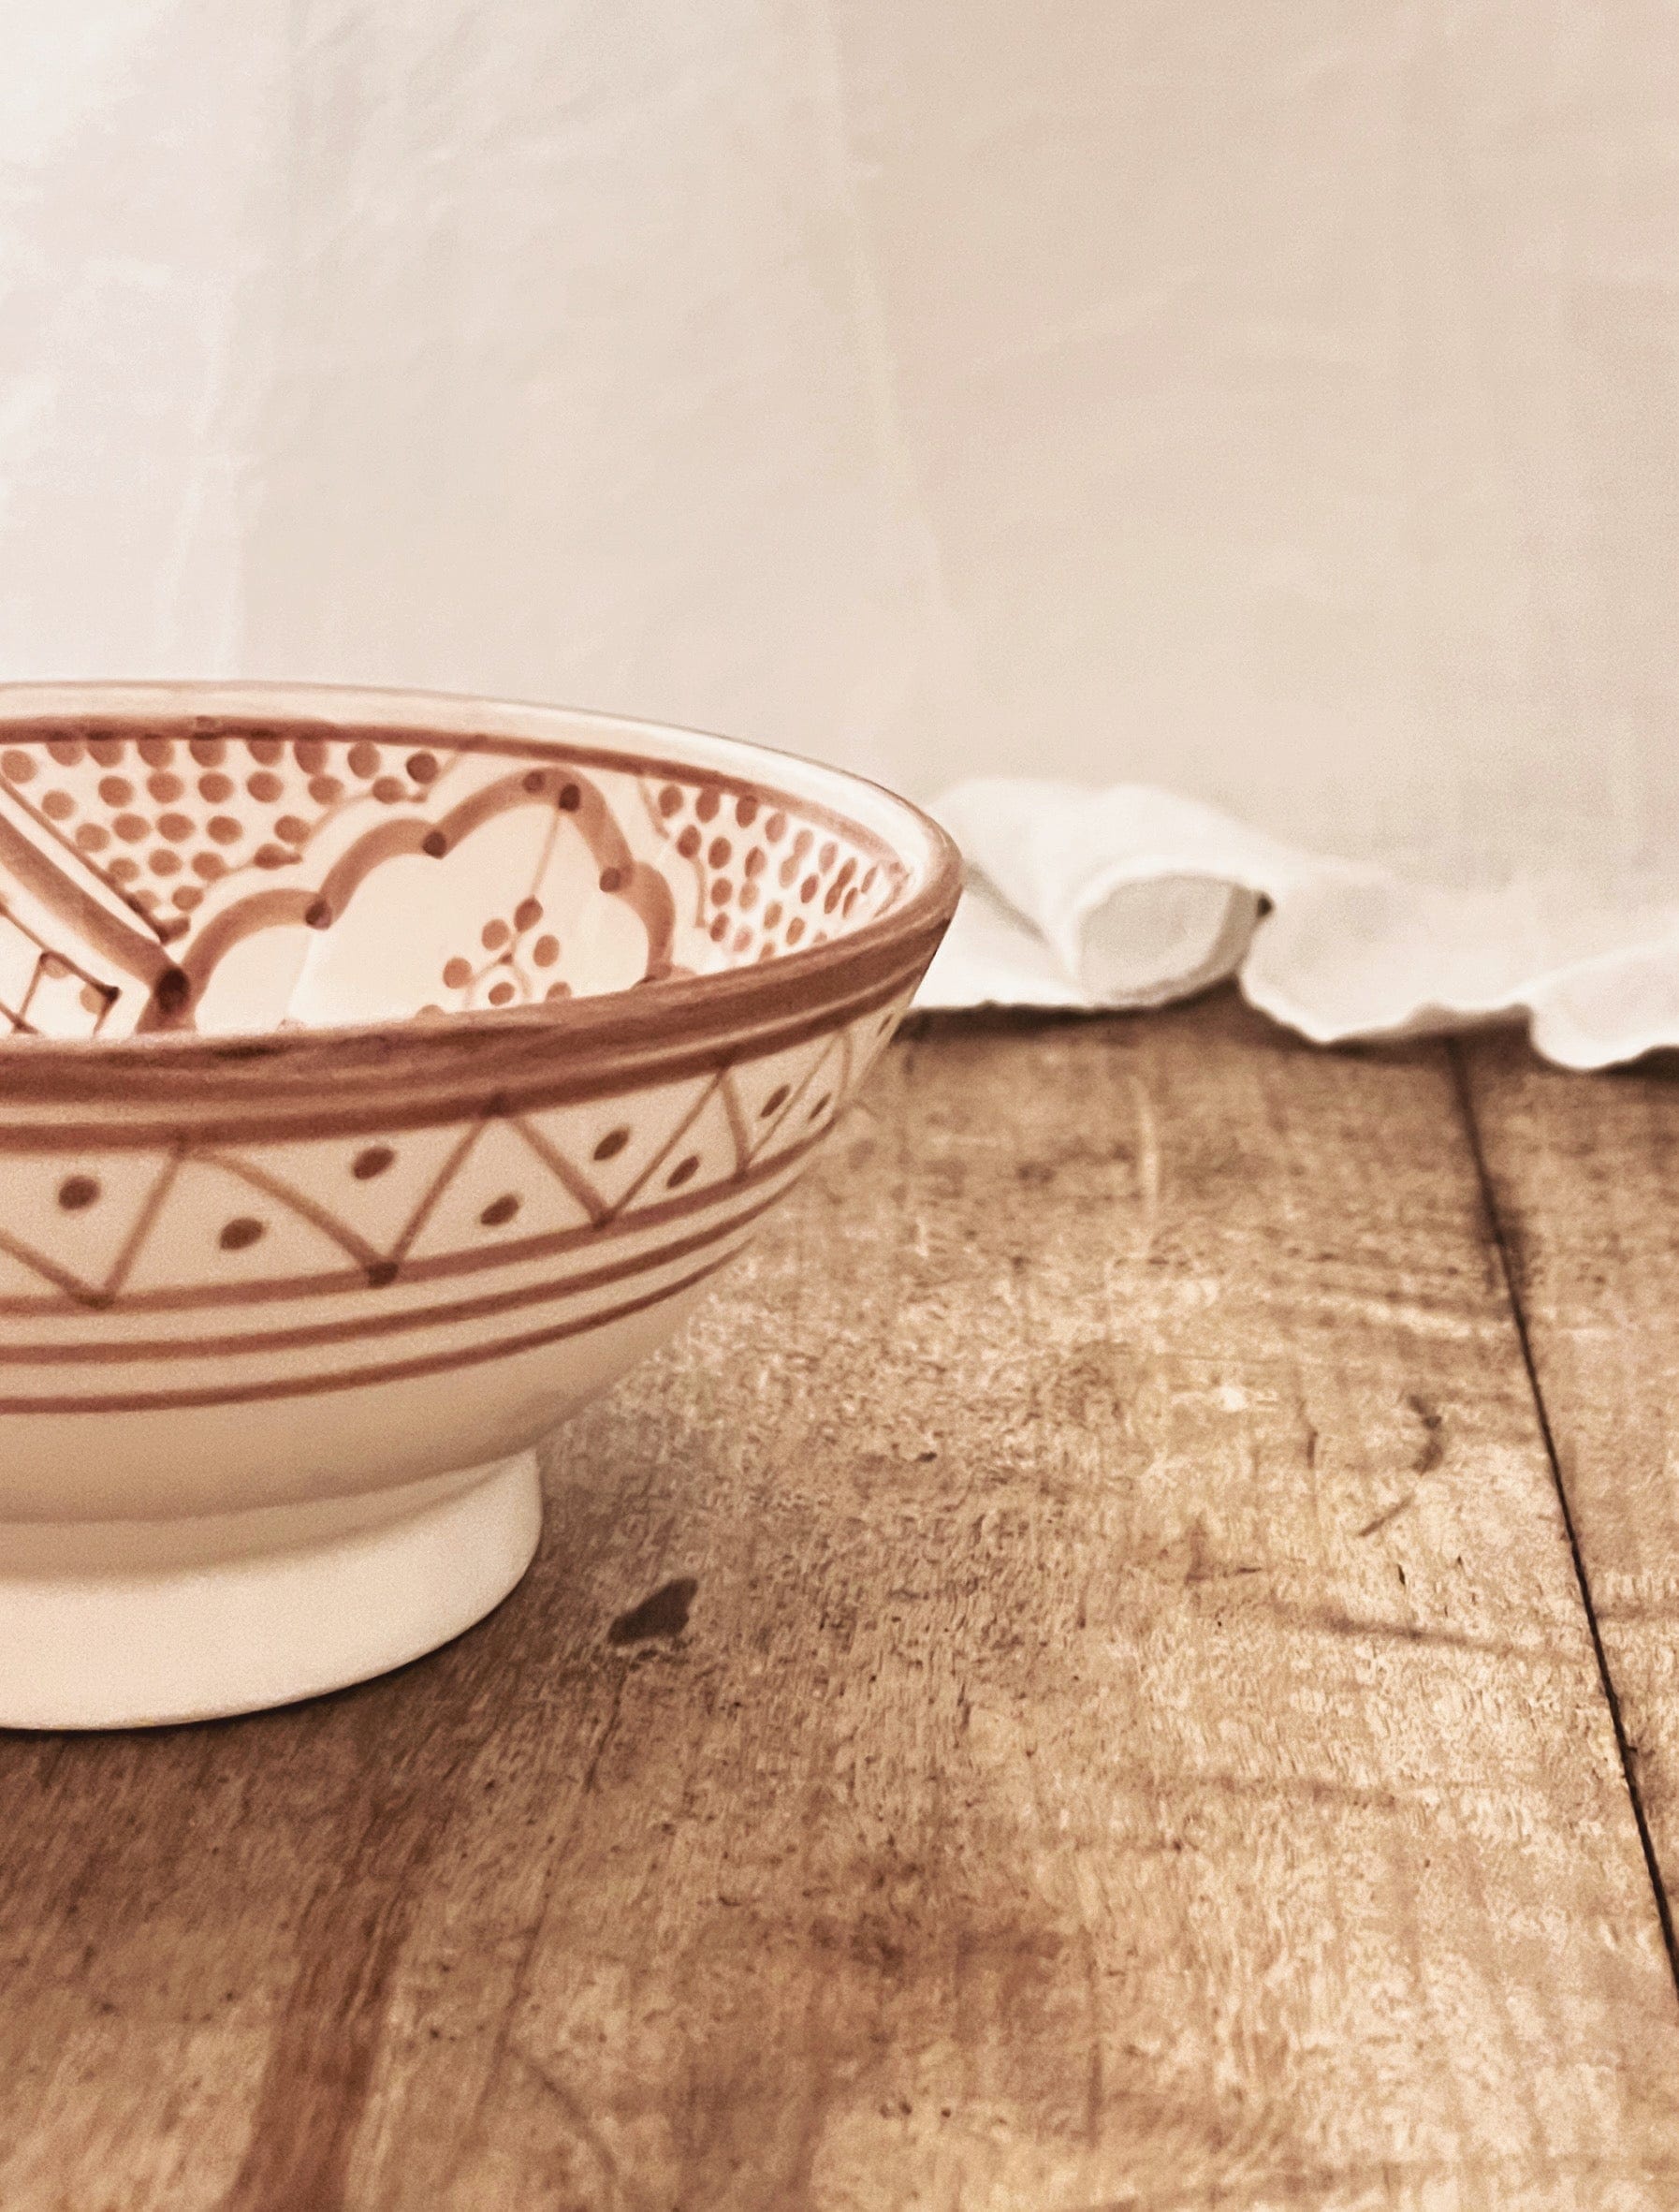 Nydelige detaljer på den vakre håndlagde og håndmalte skålen i keramikk fra Marokko med mønster i mocca. Server herlige måltider med dette unike serviset hjemme og på hytta. Fra Moroccan Home.